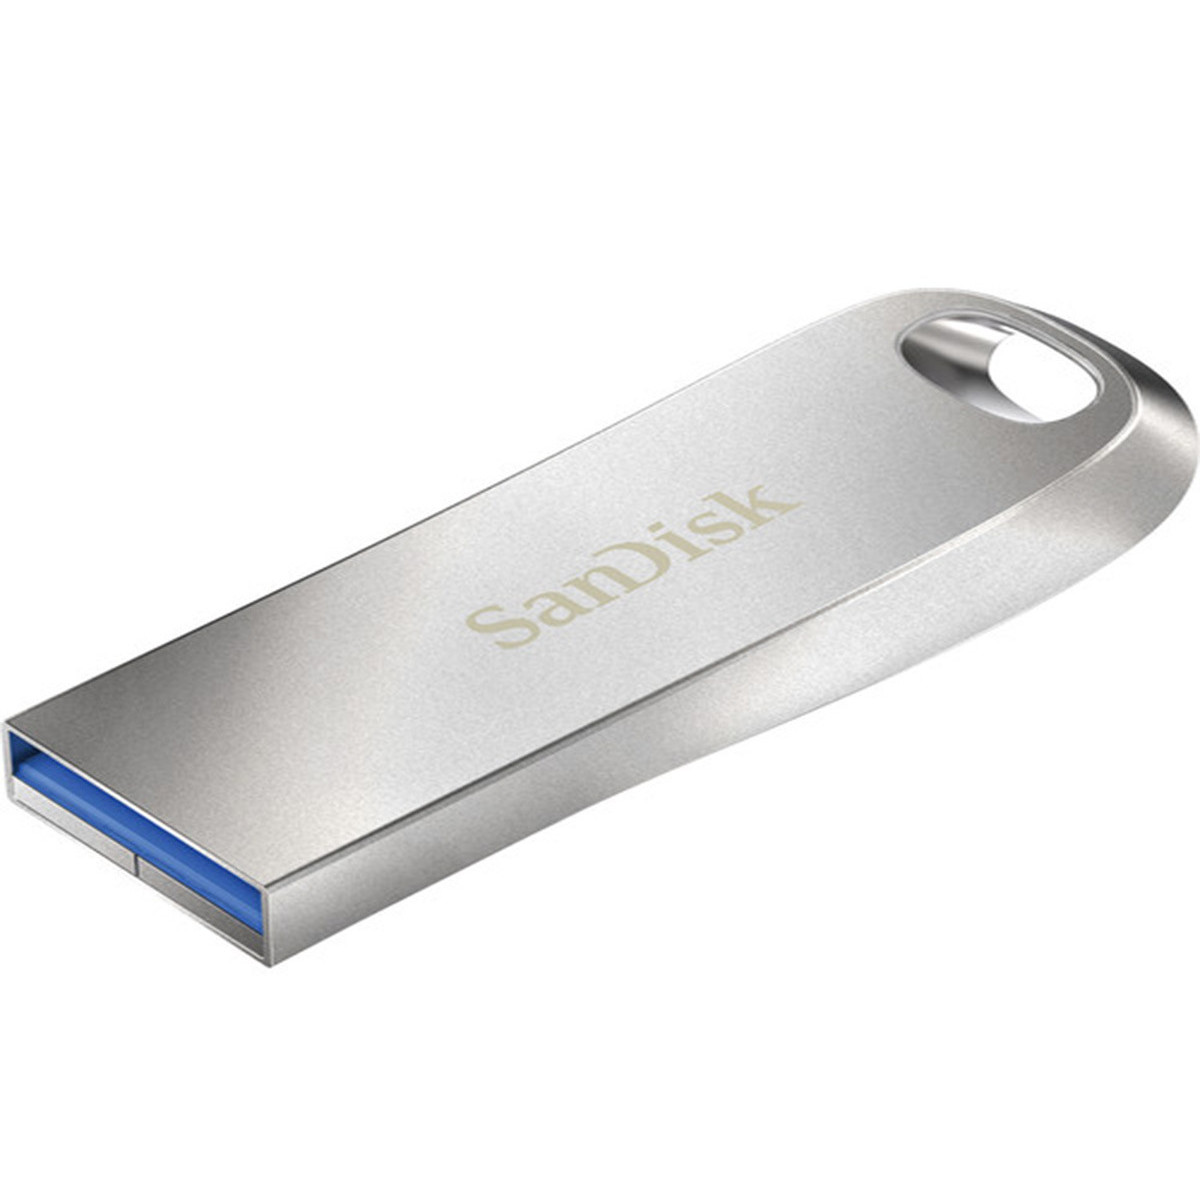 Sandisk Clé USB Ultra Dual Luxe USB C 256GB Argenté